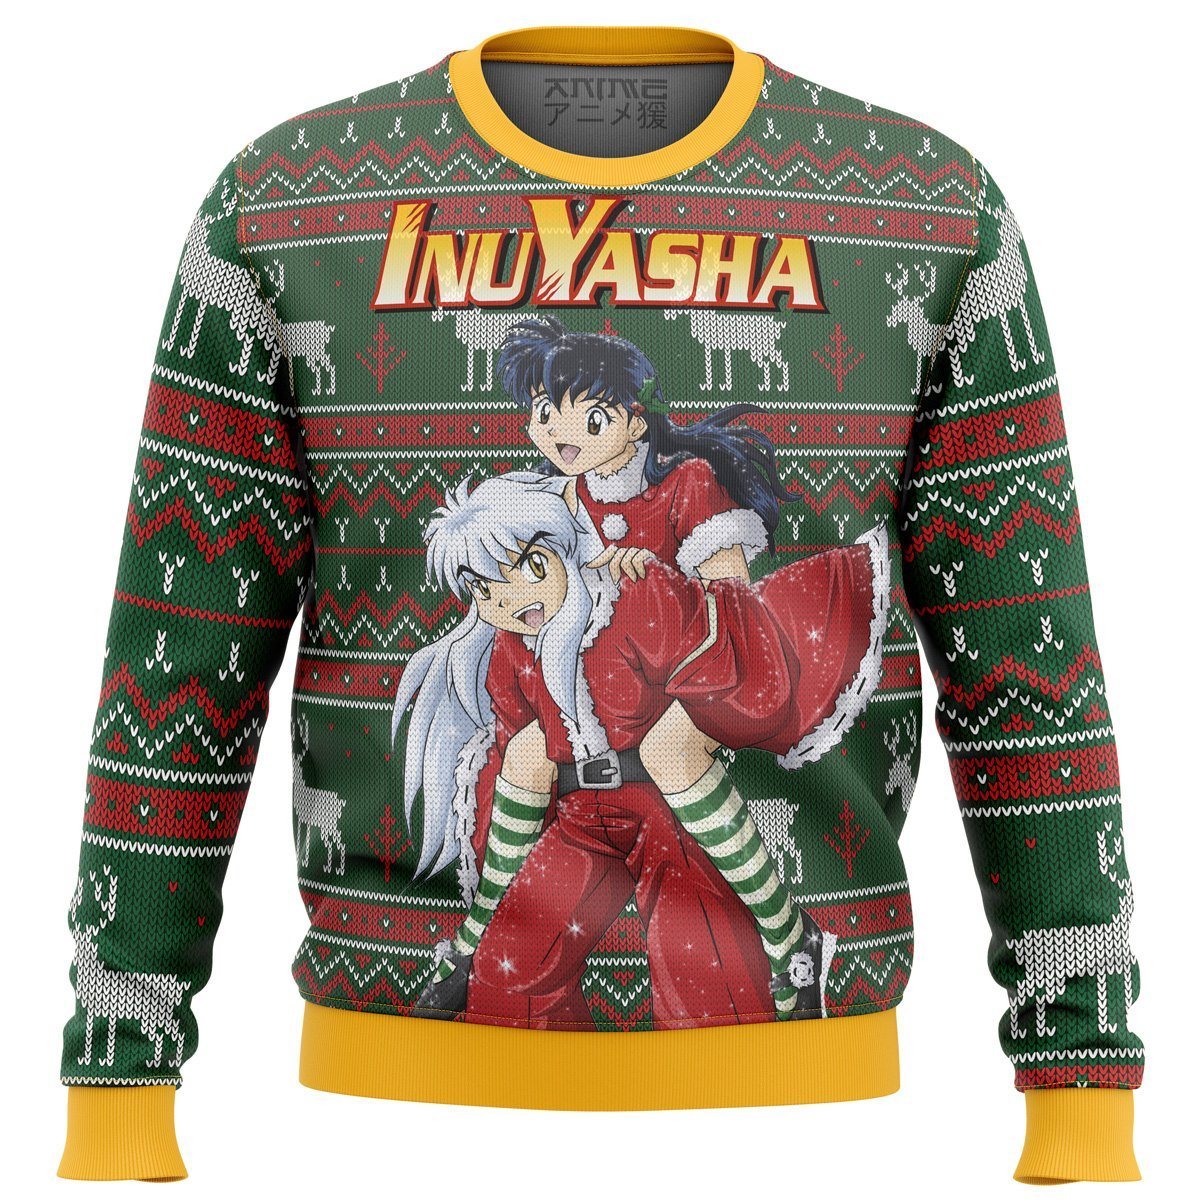 Inuyasha Alt Premium Ugly Christmas Sweater Amazing Gift Idea Thanksgiving Gift